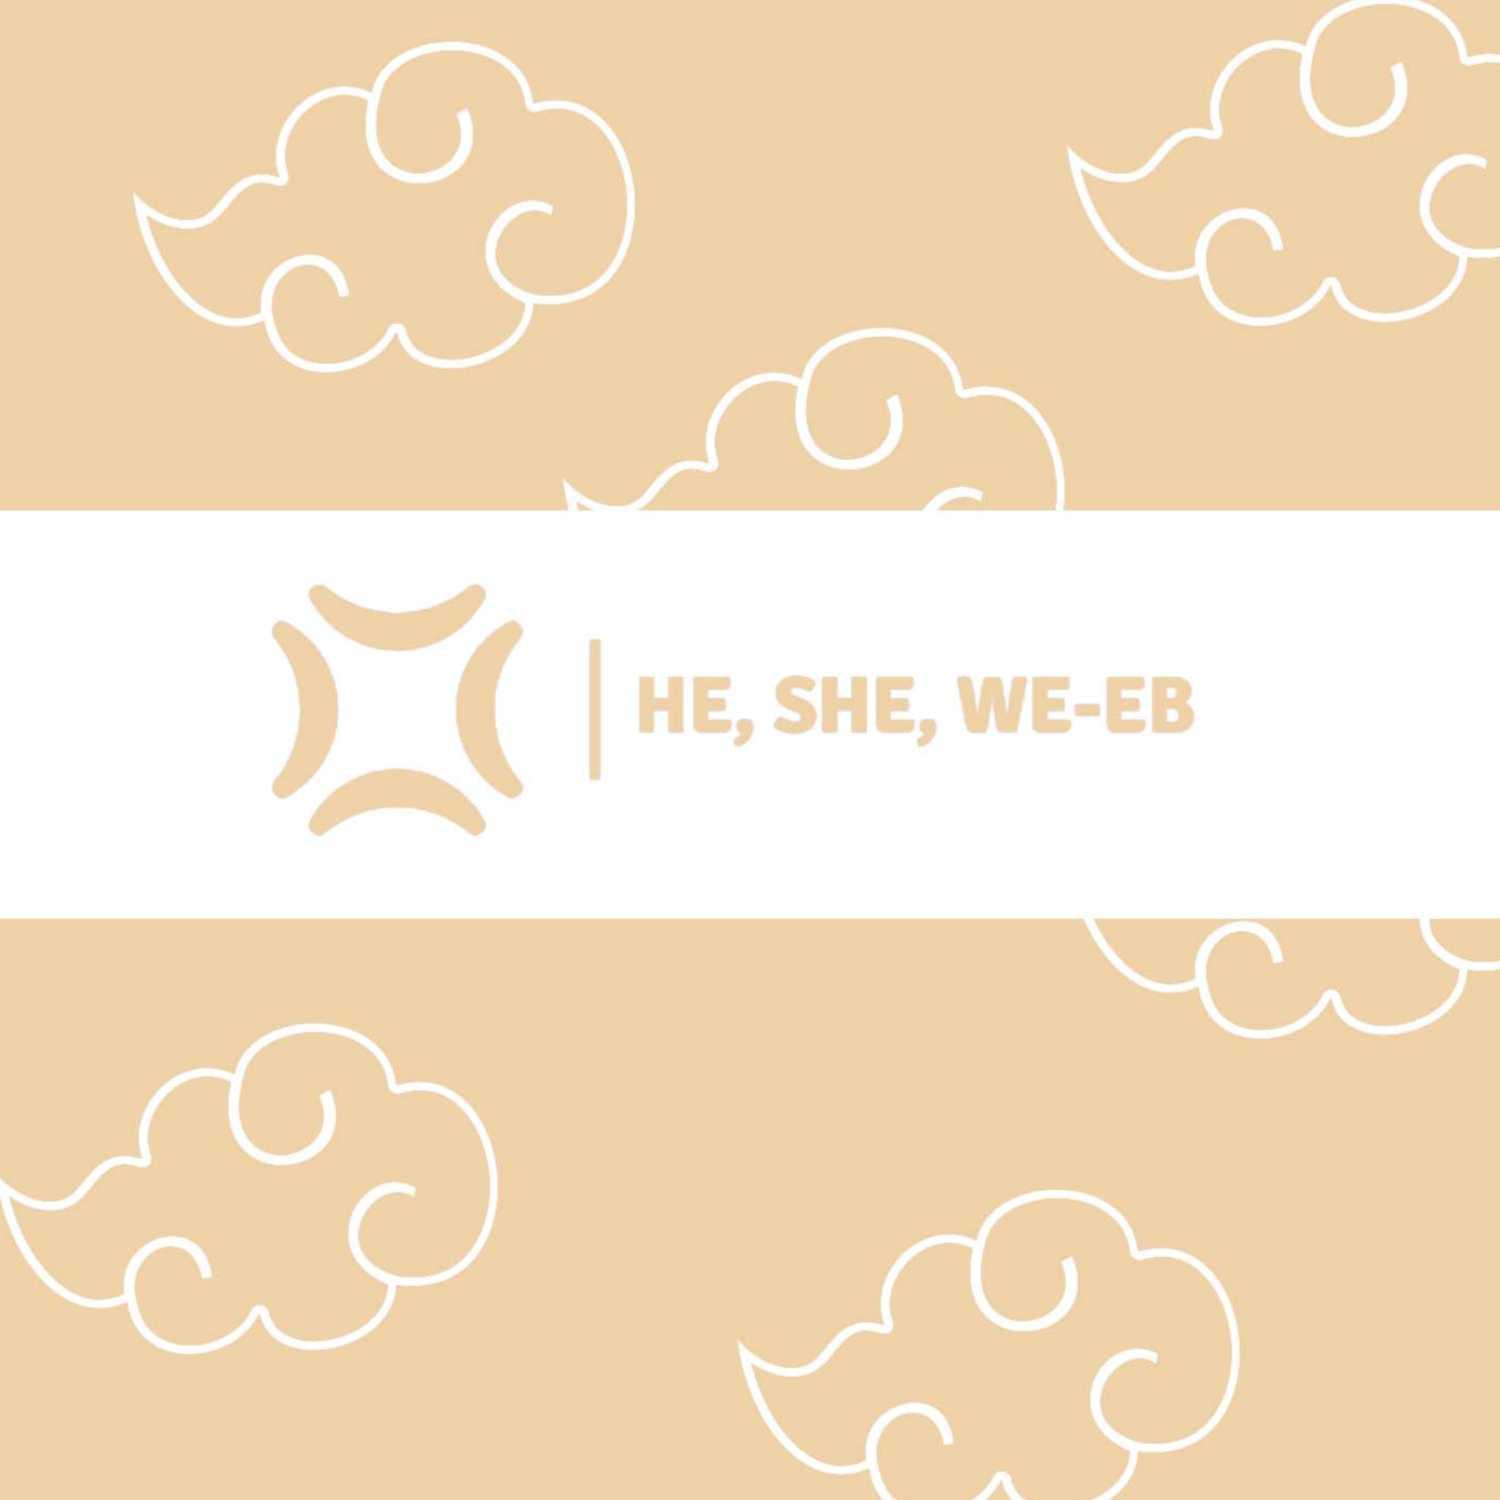 He, She, We-eB